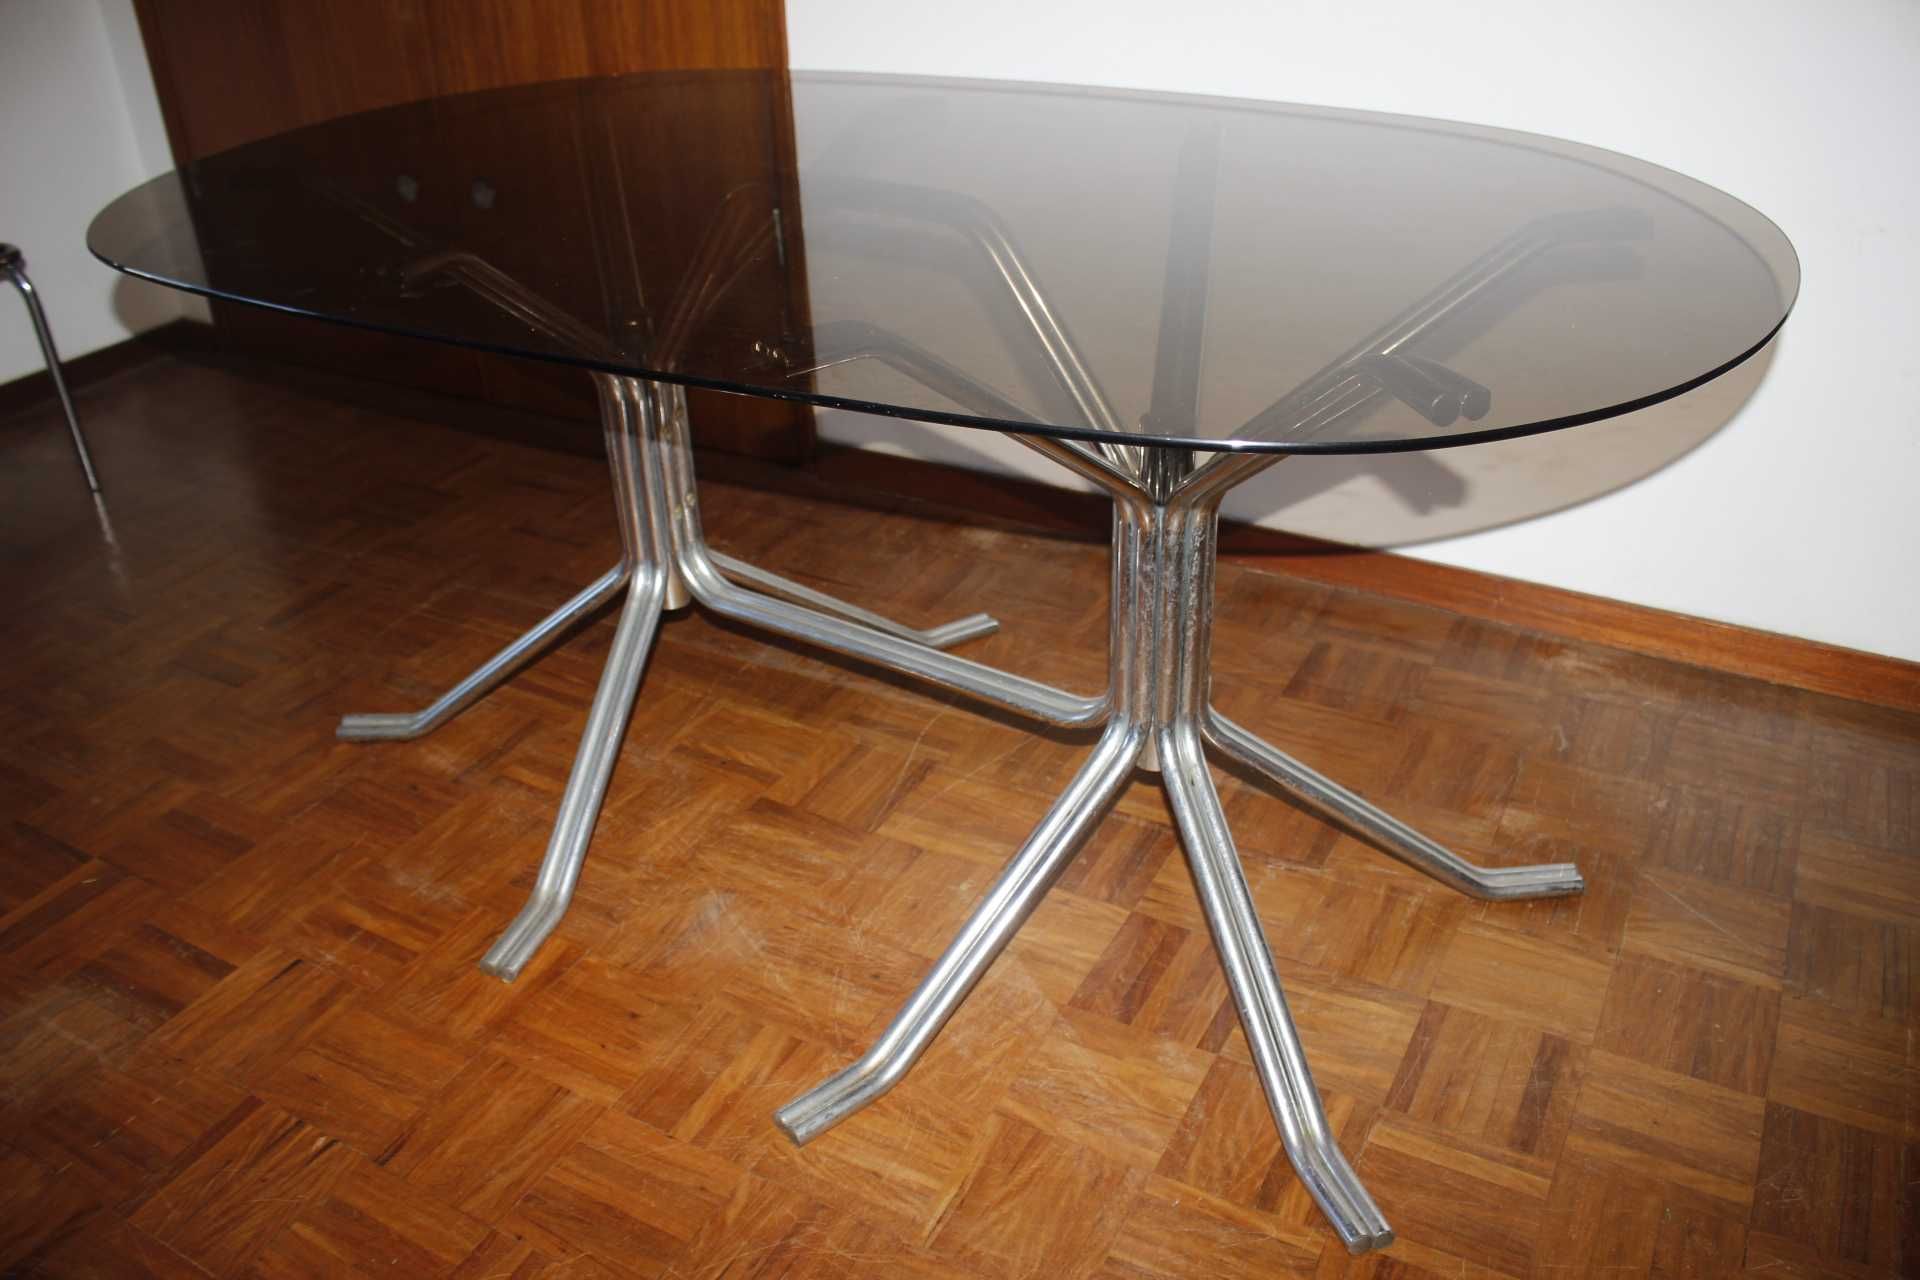 Mesa de jantar - Tubular - Design Vintage - Metal e vidro - Anos 70